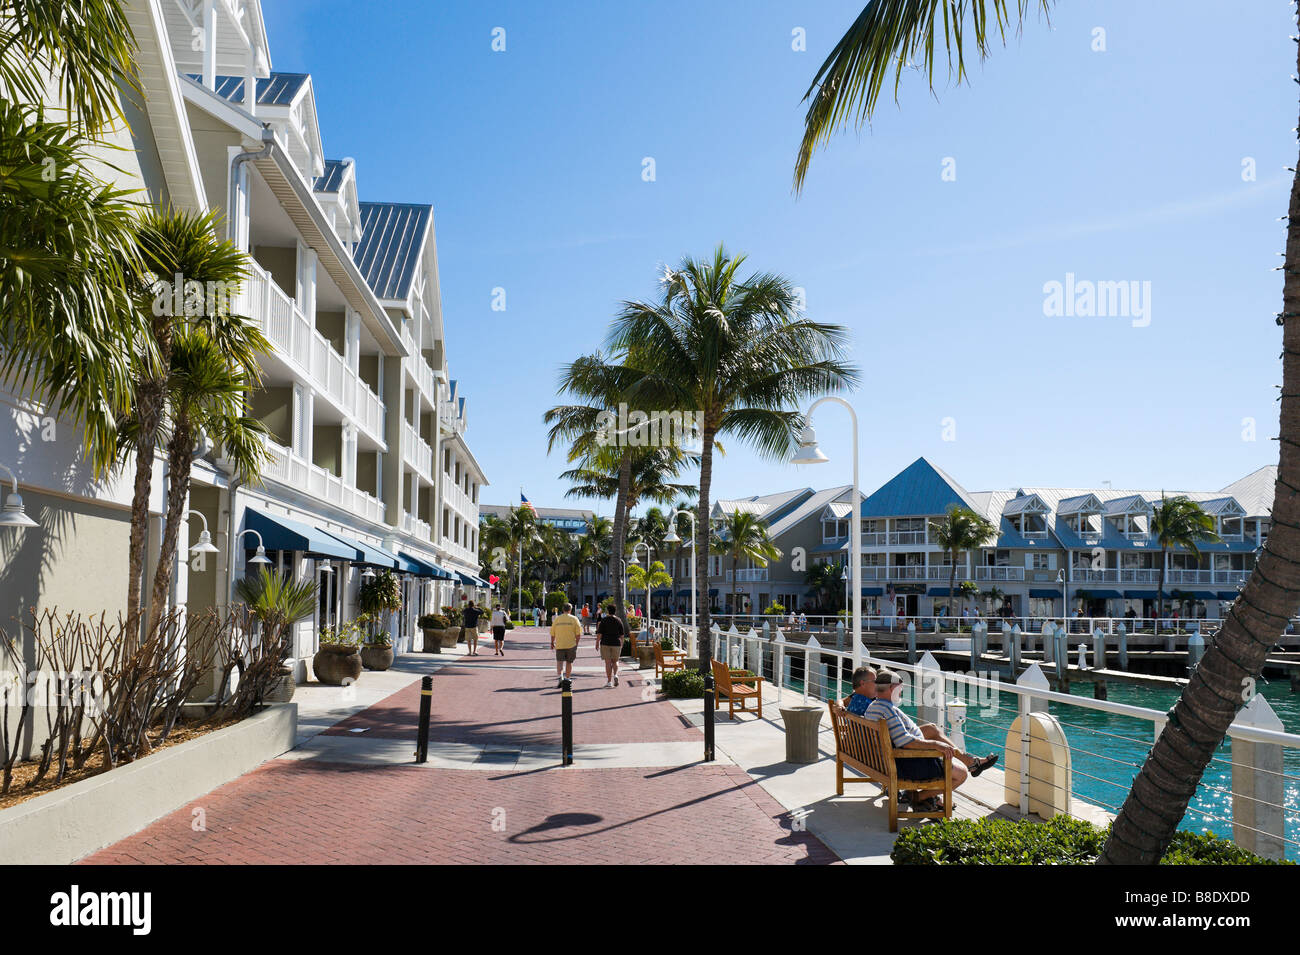 Des bancs sur le quai à Mallory Square, vers le terminal de croisière, Key West, Florida Keys, USA Banque D'Images